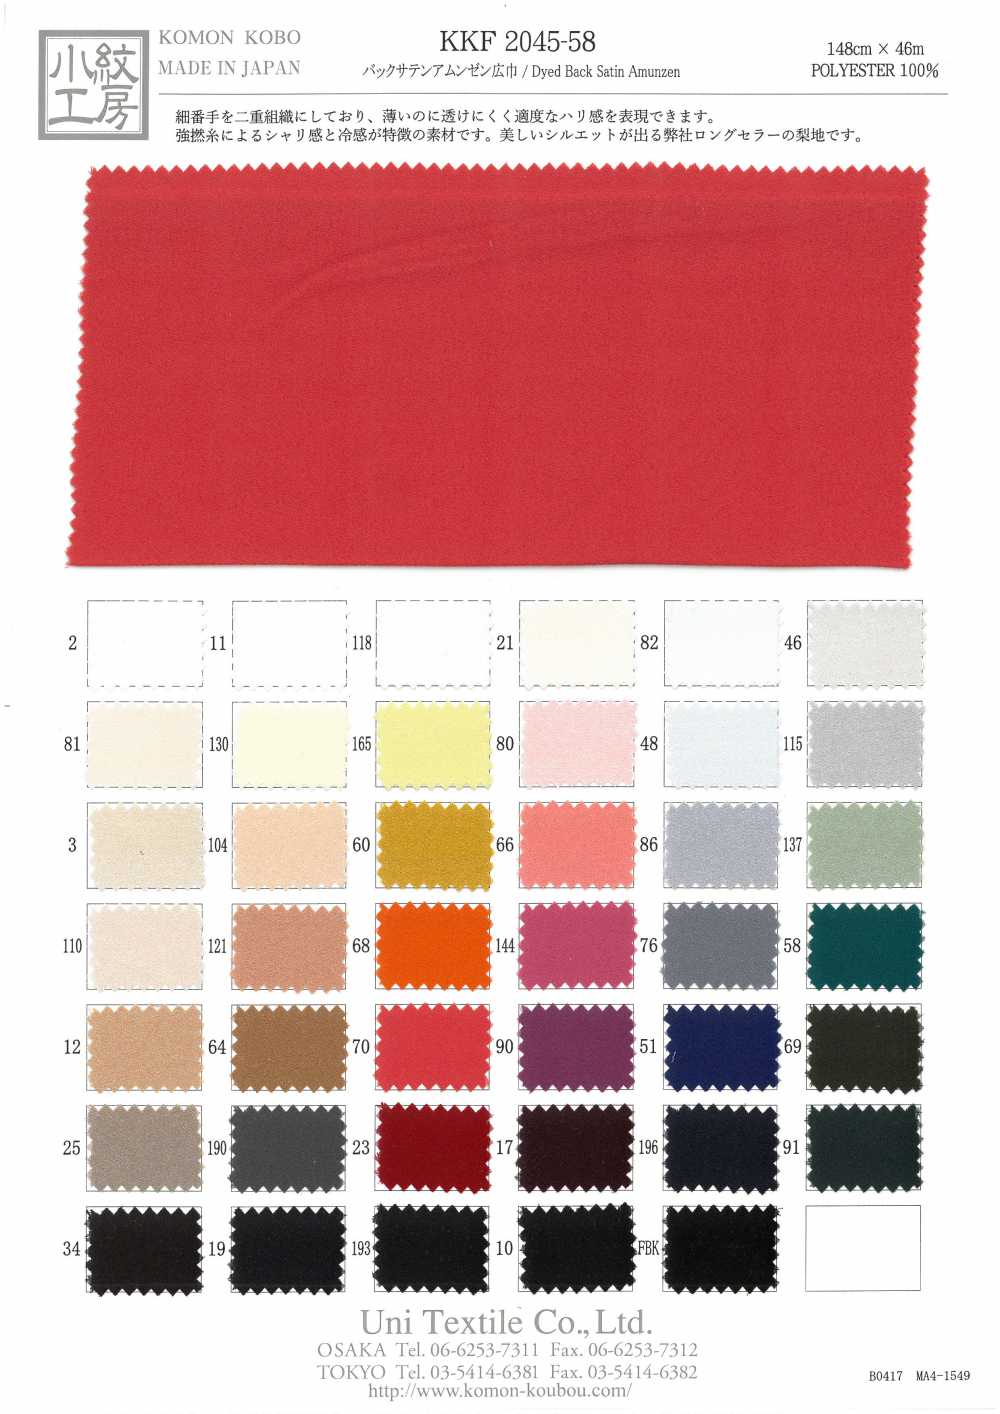 KKF2045-58 Zurück Satin Rauheit Oberfläche Breite Breite[Textilgewebe] Uni Textile